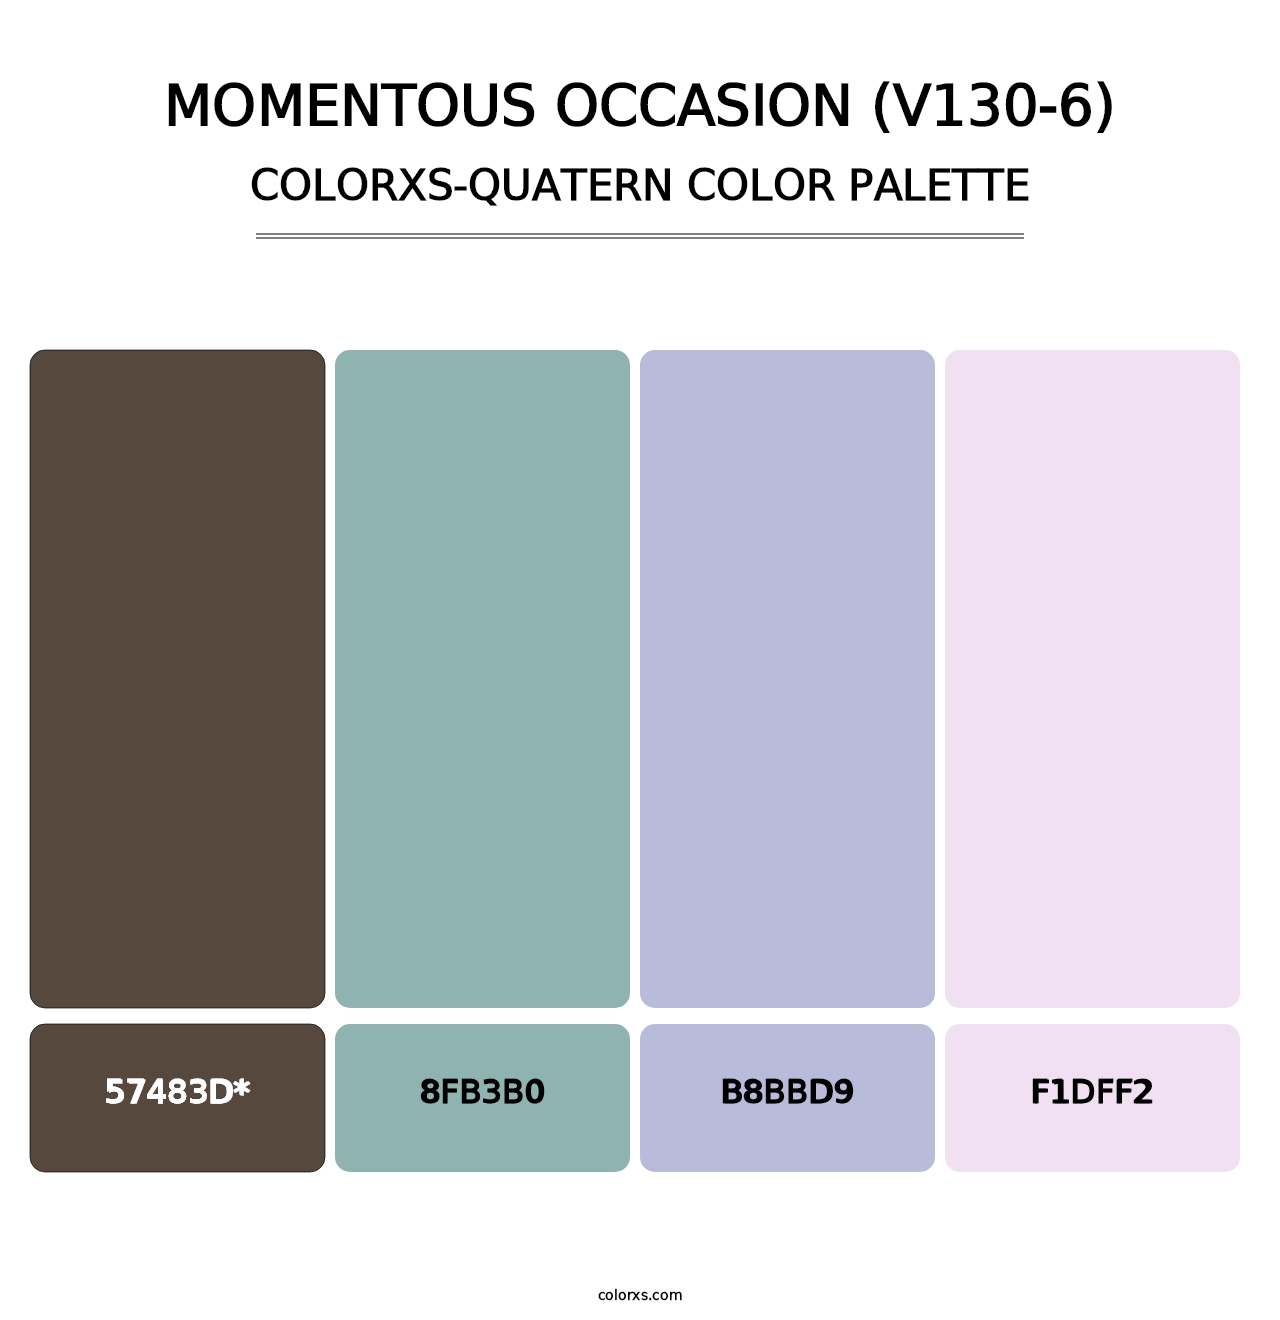 Momentous Occasion (V130-6) - Colorxs Quatern Palette